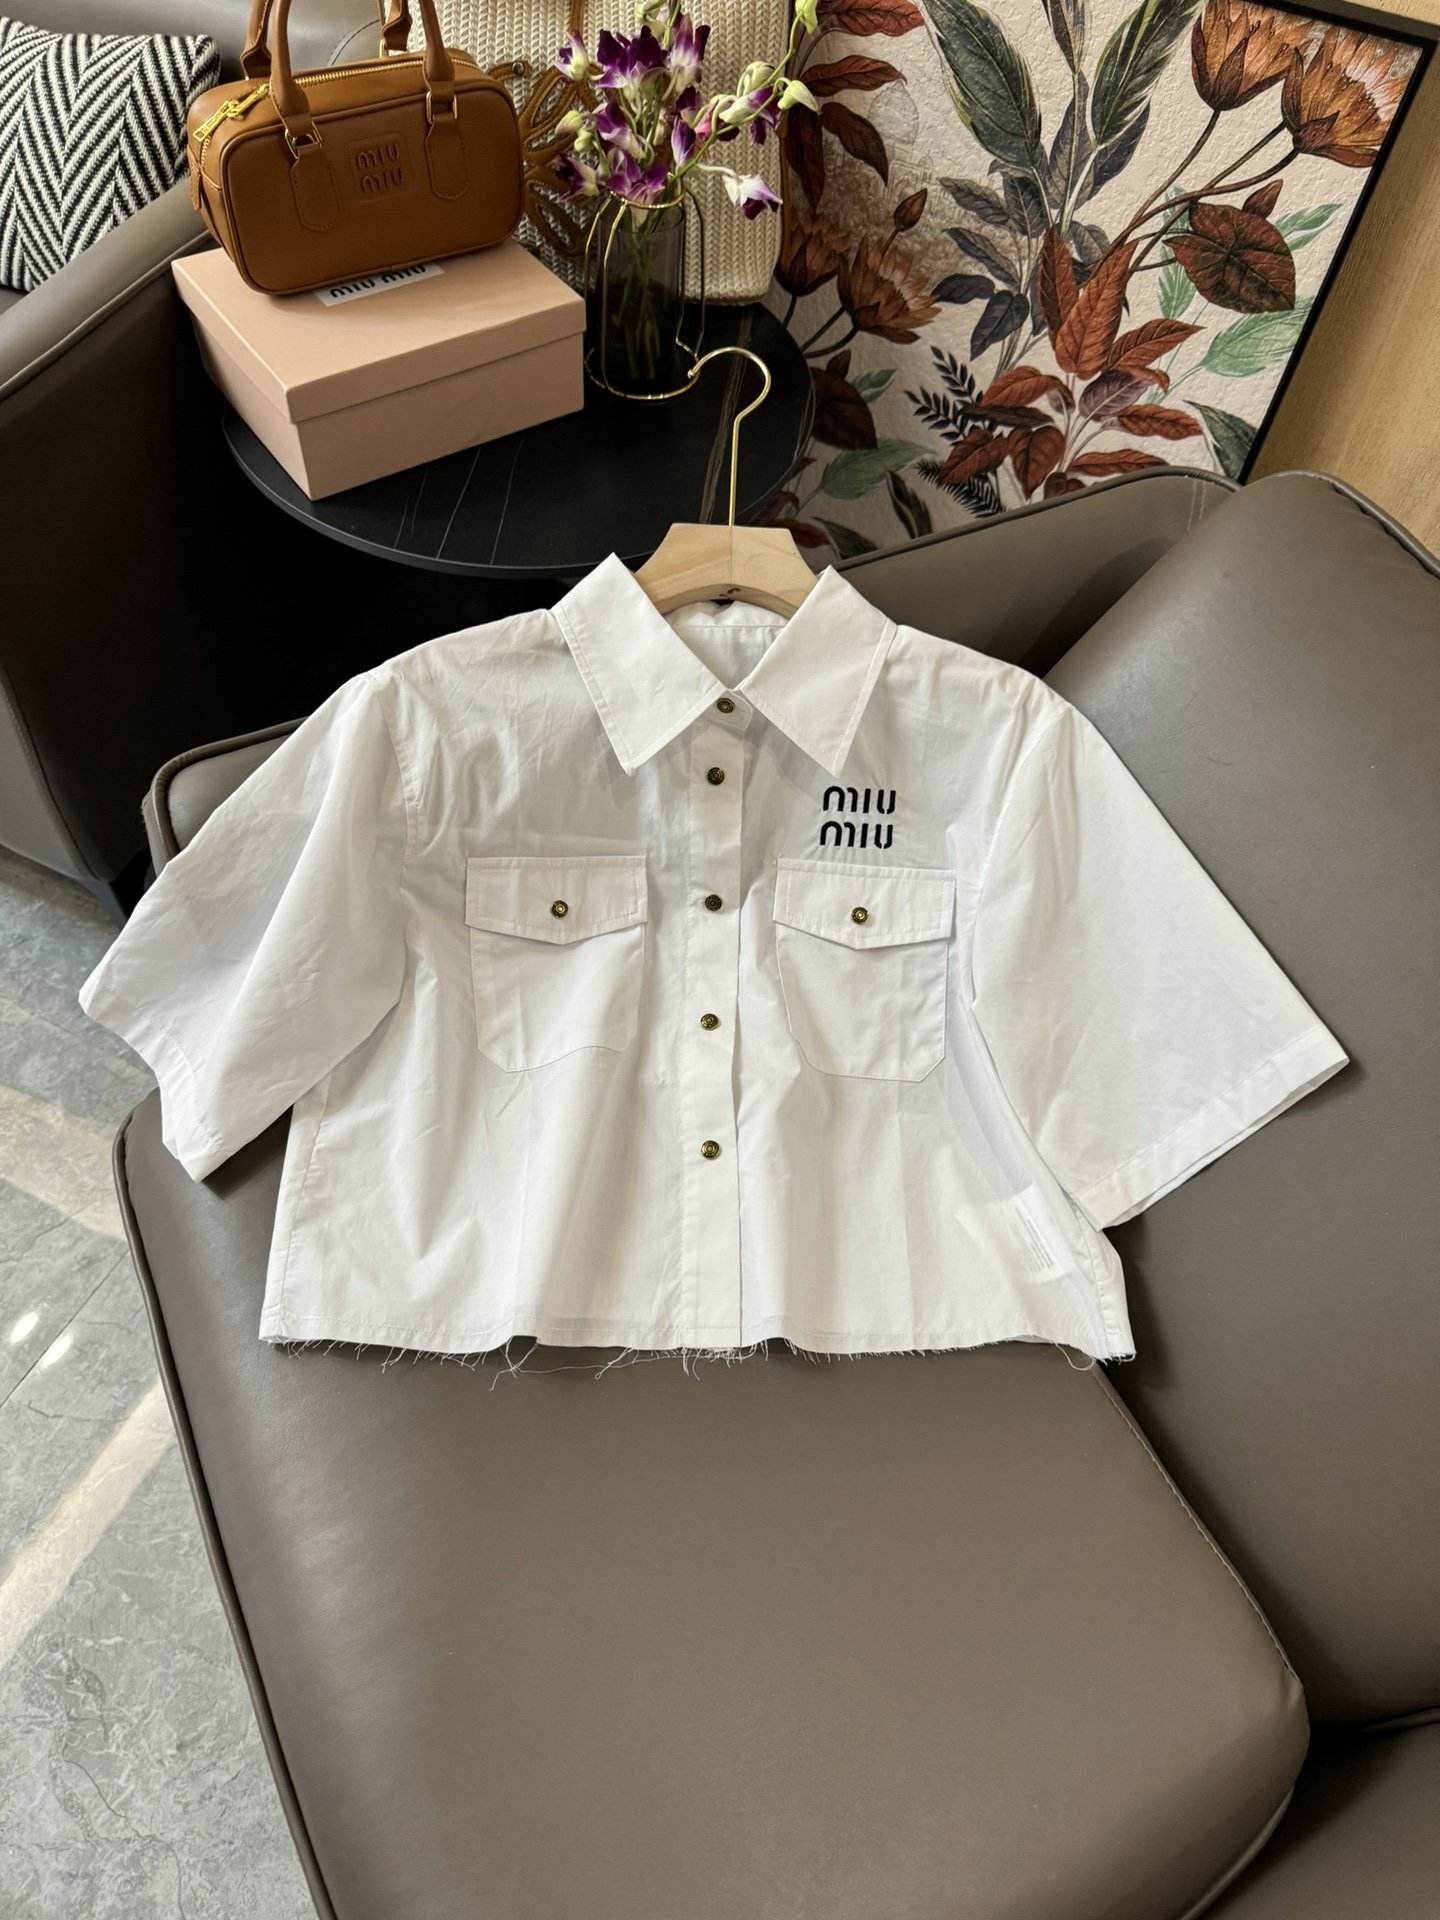 CS023#新款衬衫⚠️Pzzdqd????\nmiu miu 字母绣花 最新款 短袖衬衫 白色 SML